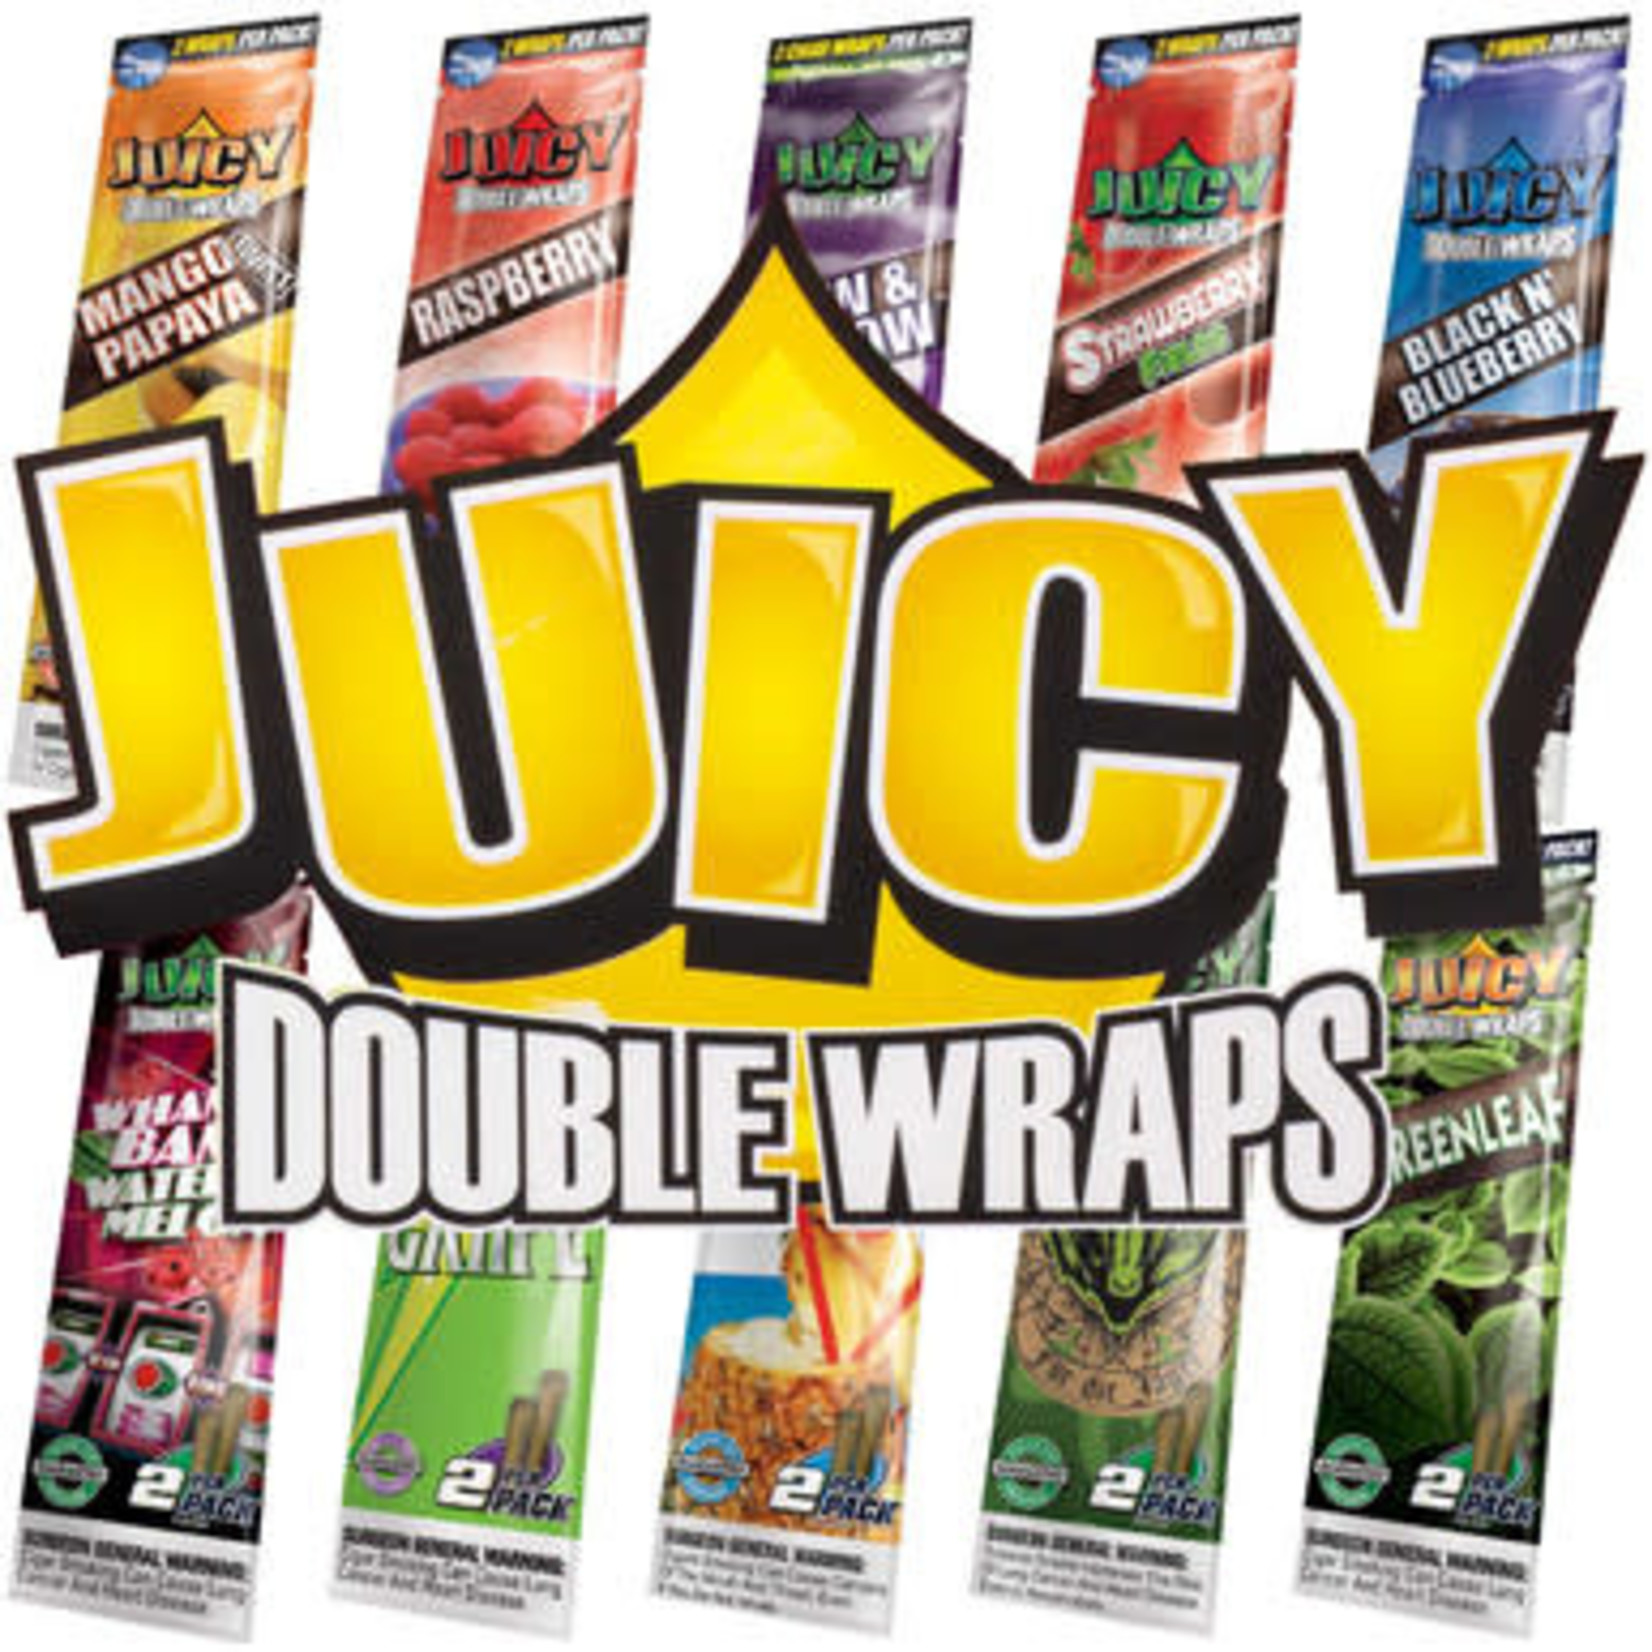 Juicy Jay Juicy Jay Double Wrap 25ct